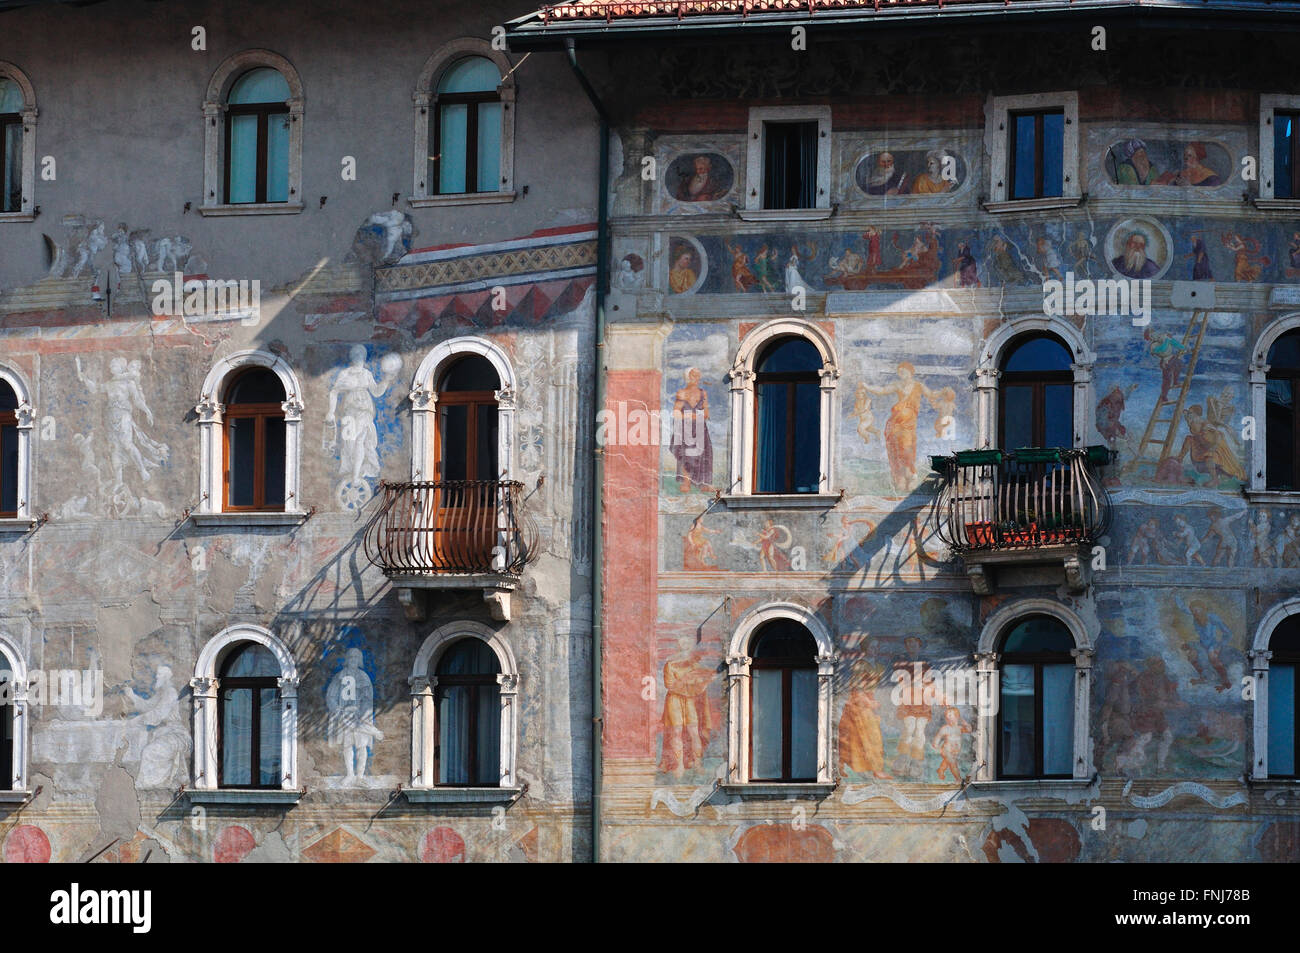 Italy, Trentino Alto Adige, Trento, Duomo square, Casa Cazuffi-Rella fresco by Marcello Fogolino Stock Photo